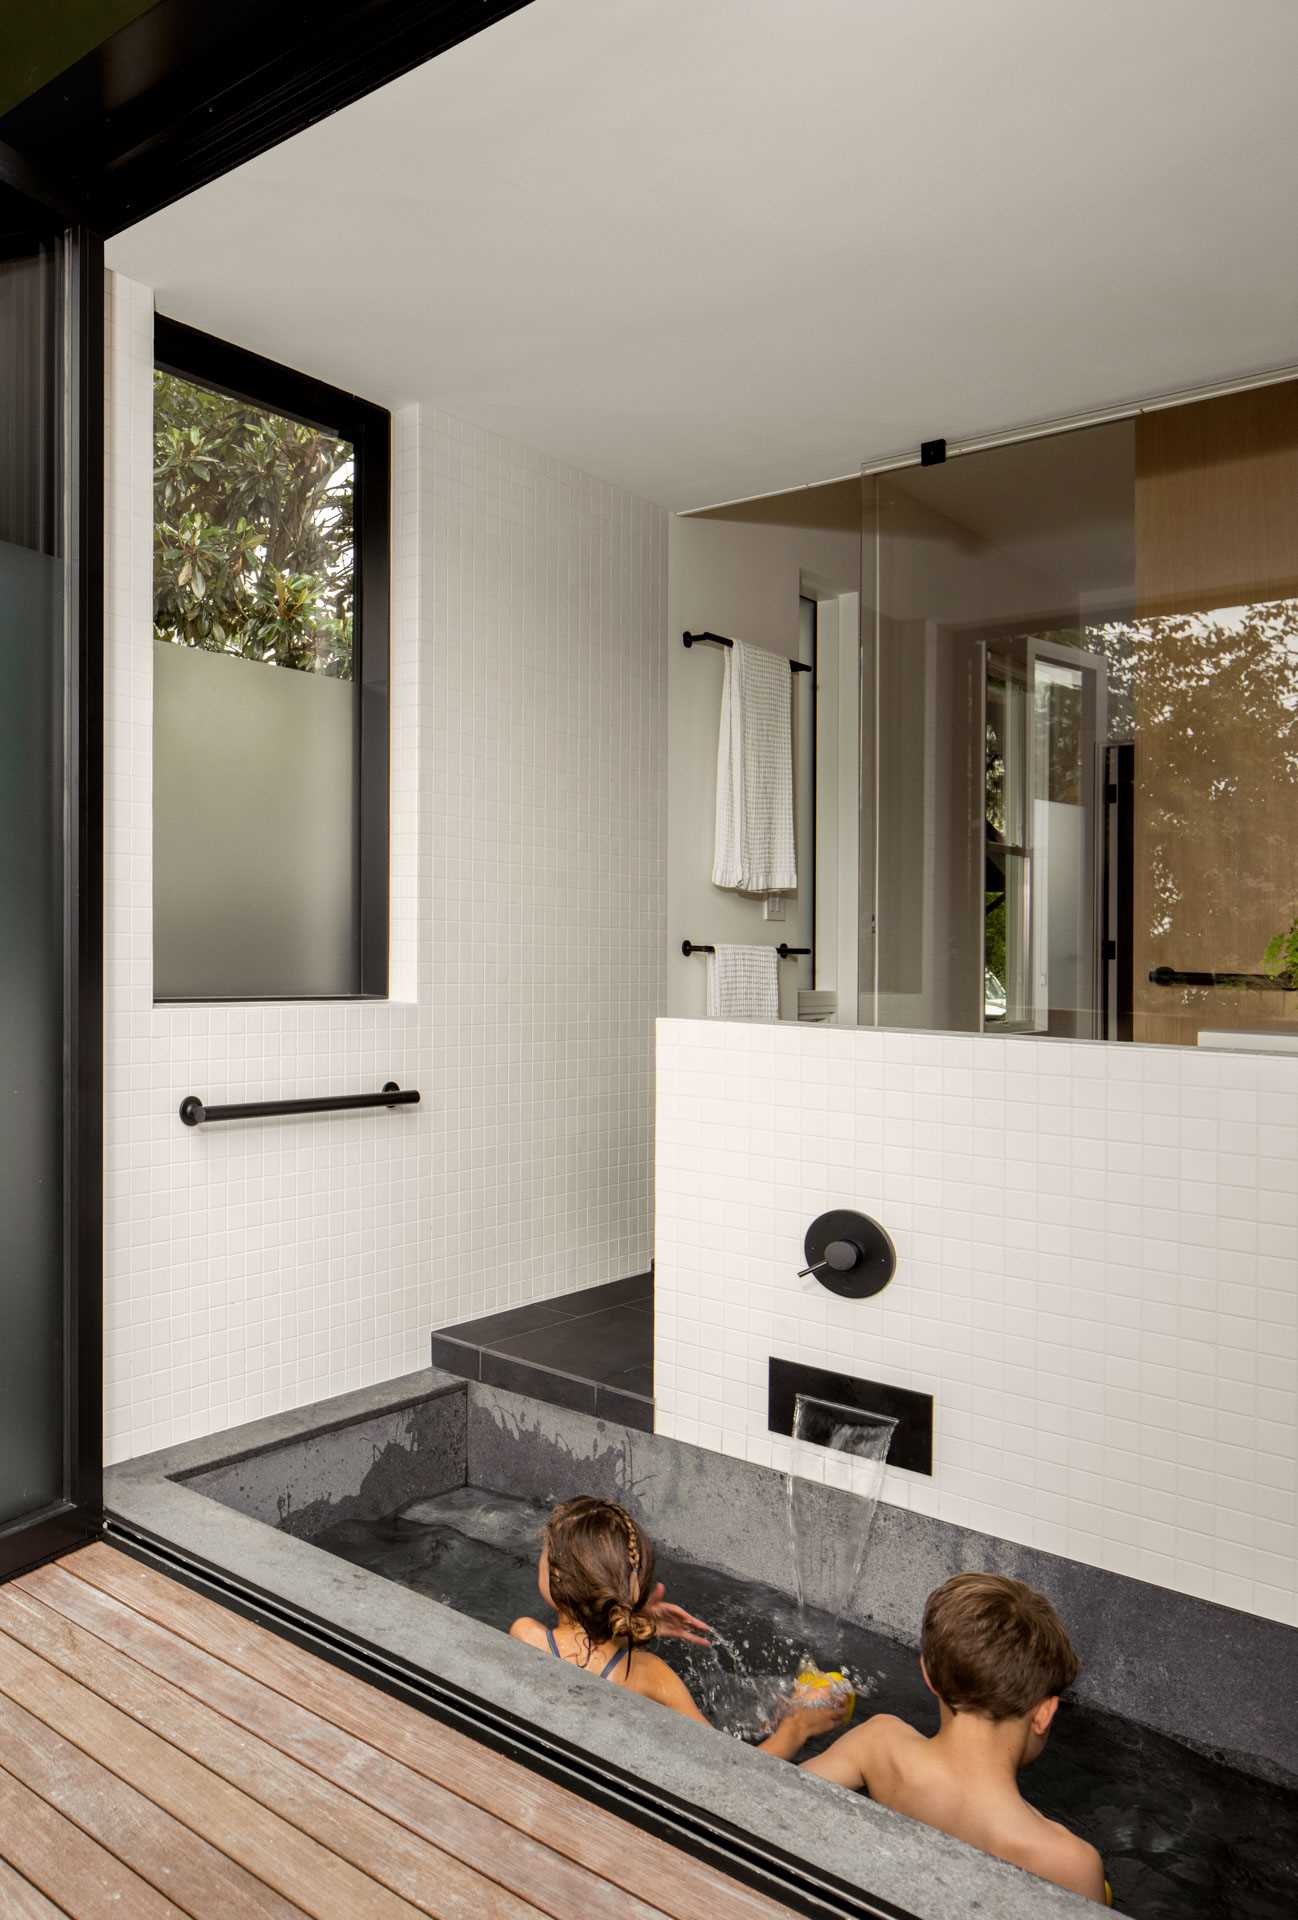 یک حمام خانوادگی مدرن شامل یک وان سنتی ژاپنی (Ofuro) است که مستقیماً از طریق یک در شیشه ای تاشو به فضای باز متصل می شود.  یک اتاق توالت مجزا راحتی و قابلیت استفاده را برای خانواده جوان افزایش می دهد.